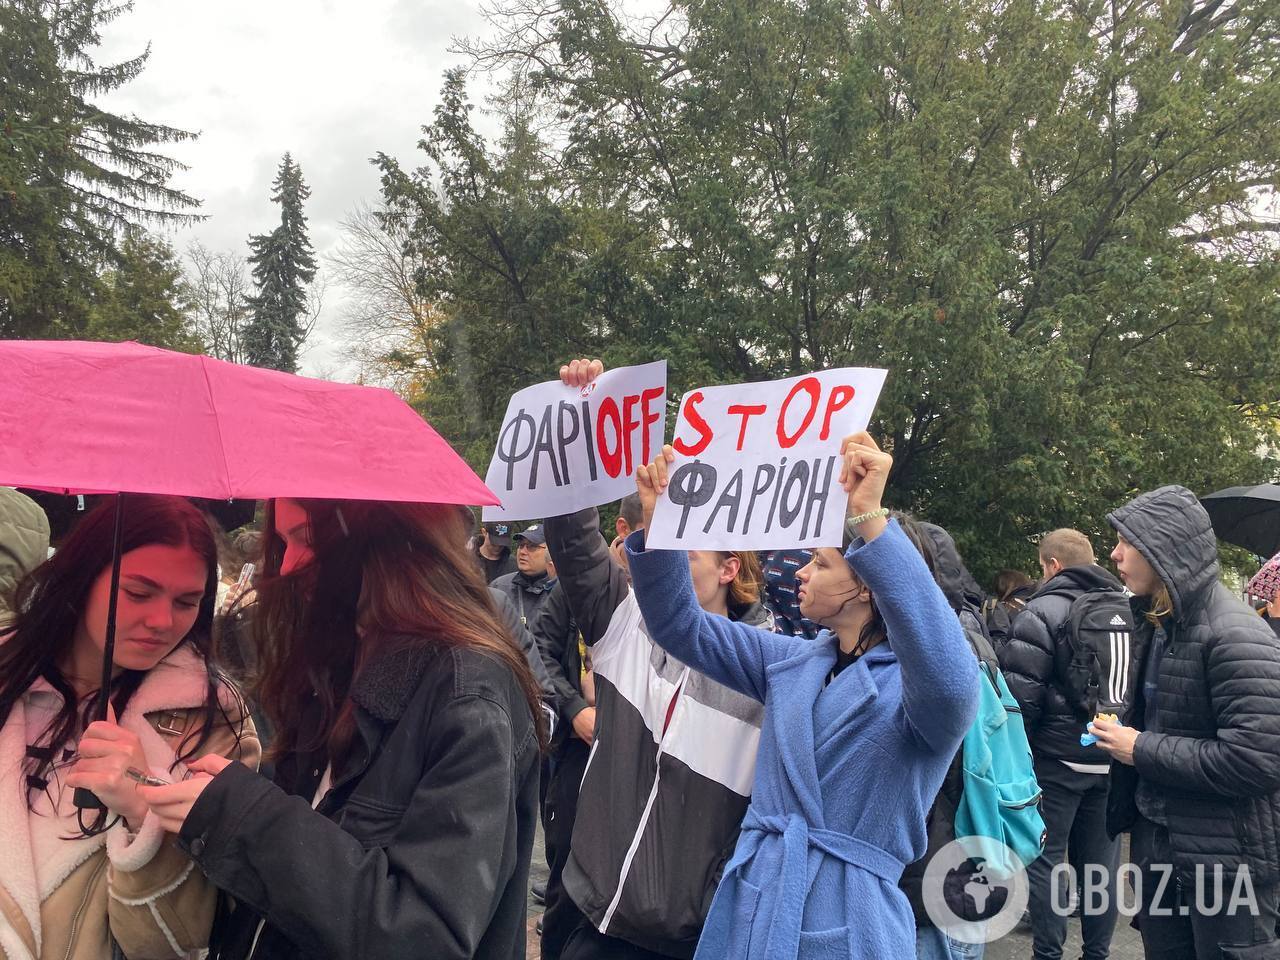 "Ганьбить Україну": у Львові студенти вийшли на мітинг з вимогою звільнення Фаріон. Що відомо про скандали з її участю